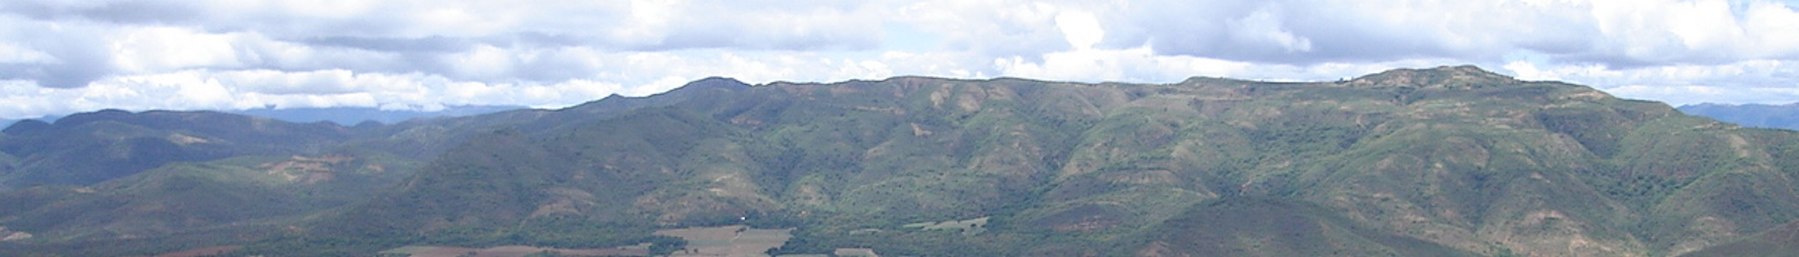 WV banner Tropske nizinske planine iznad Comarpe.jpg